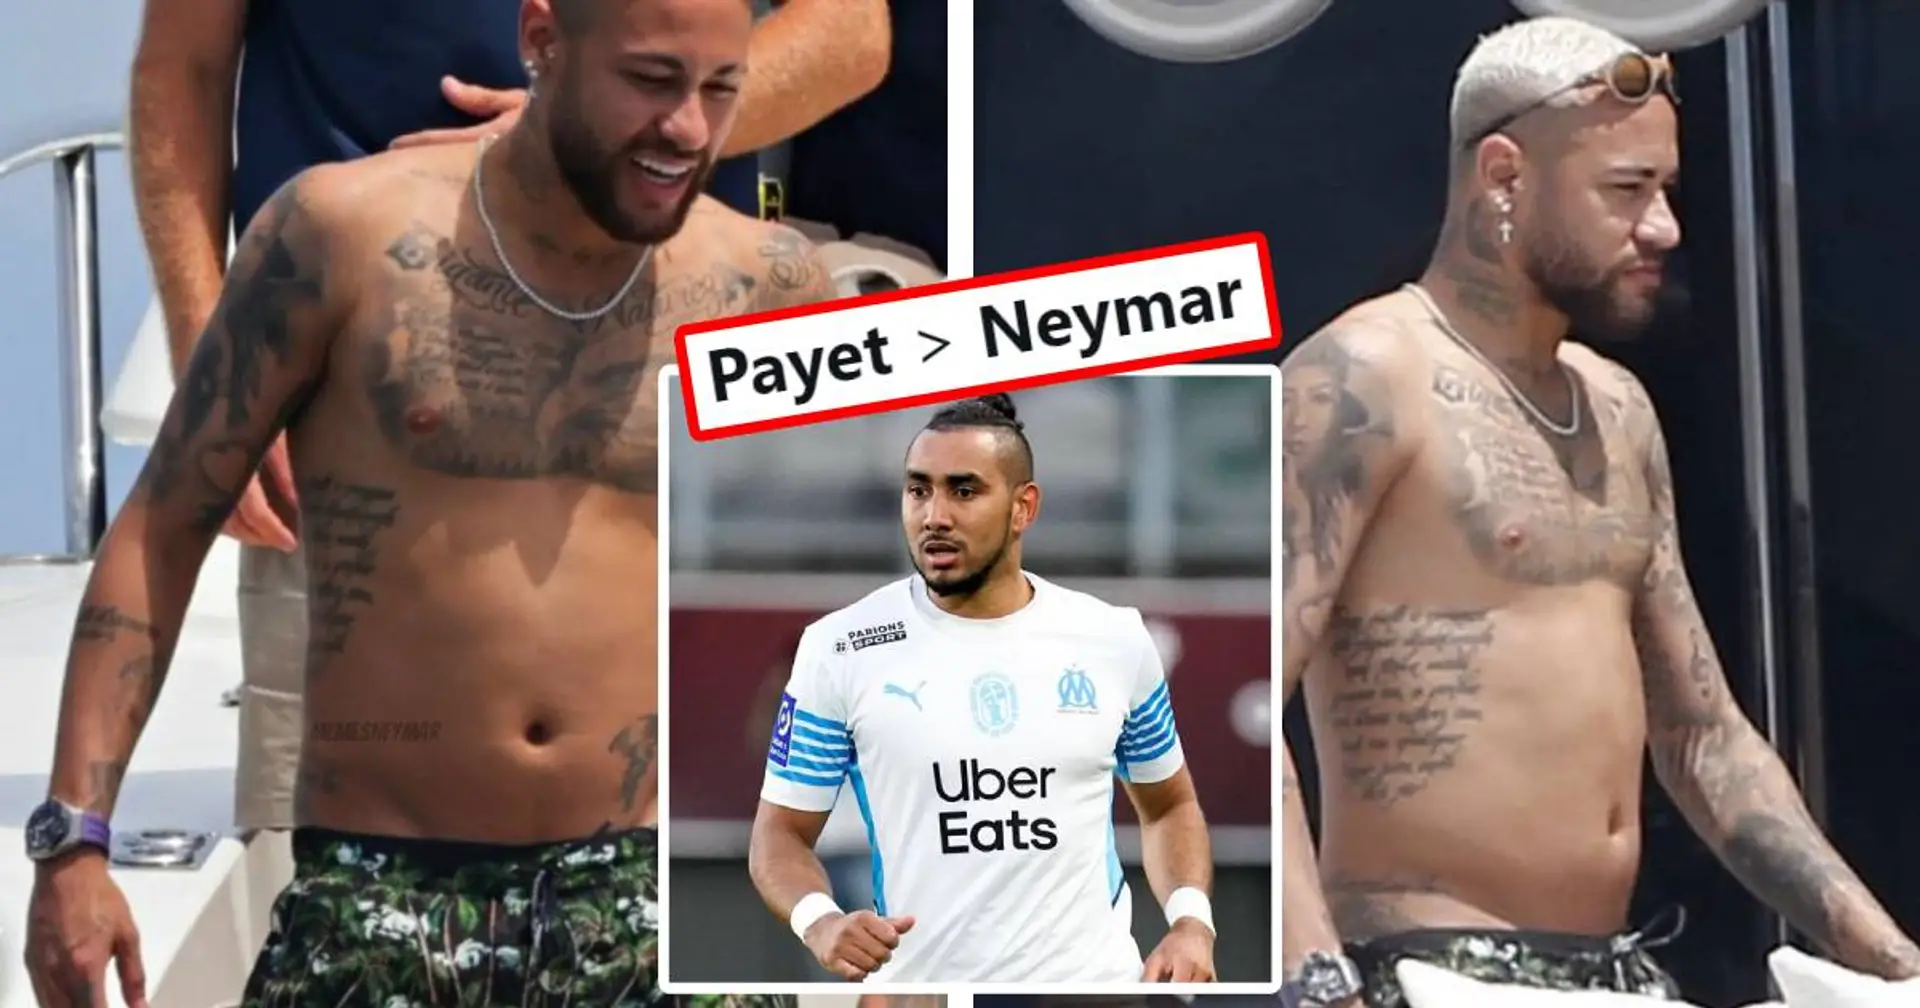 Les fans de l'OM refusent toute comparaison avec Payet après les derniers clichés montrant Neymar avec de l'embonpoint